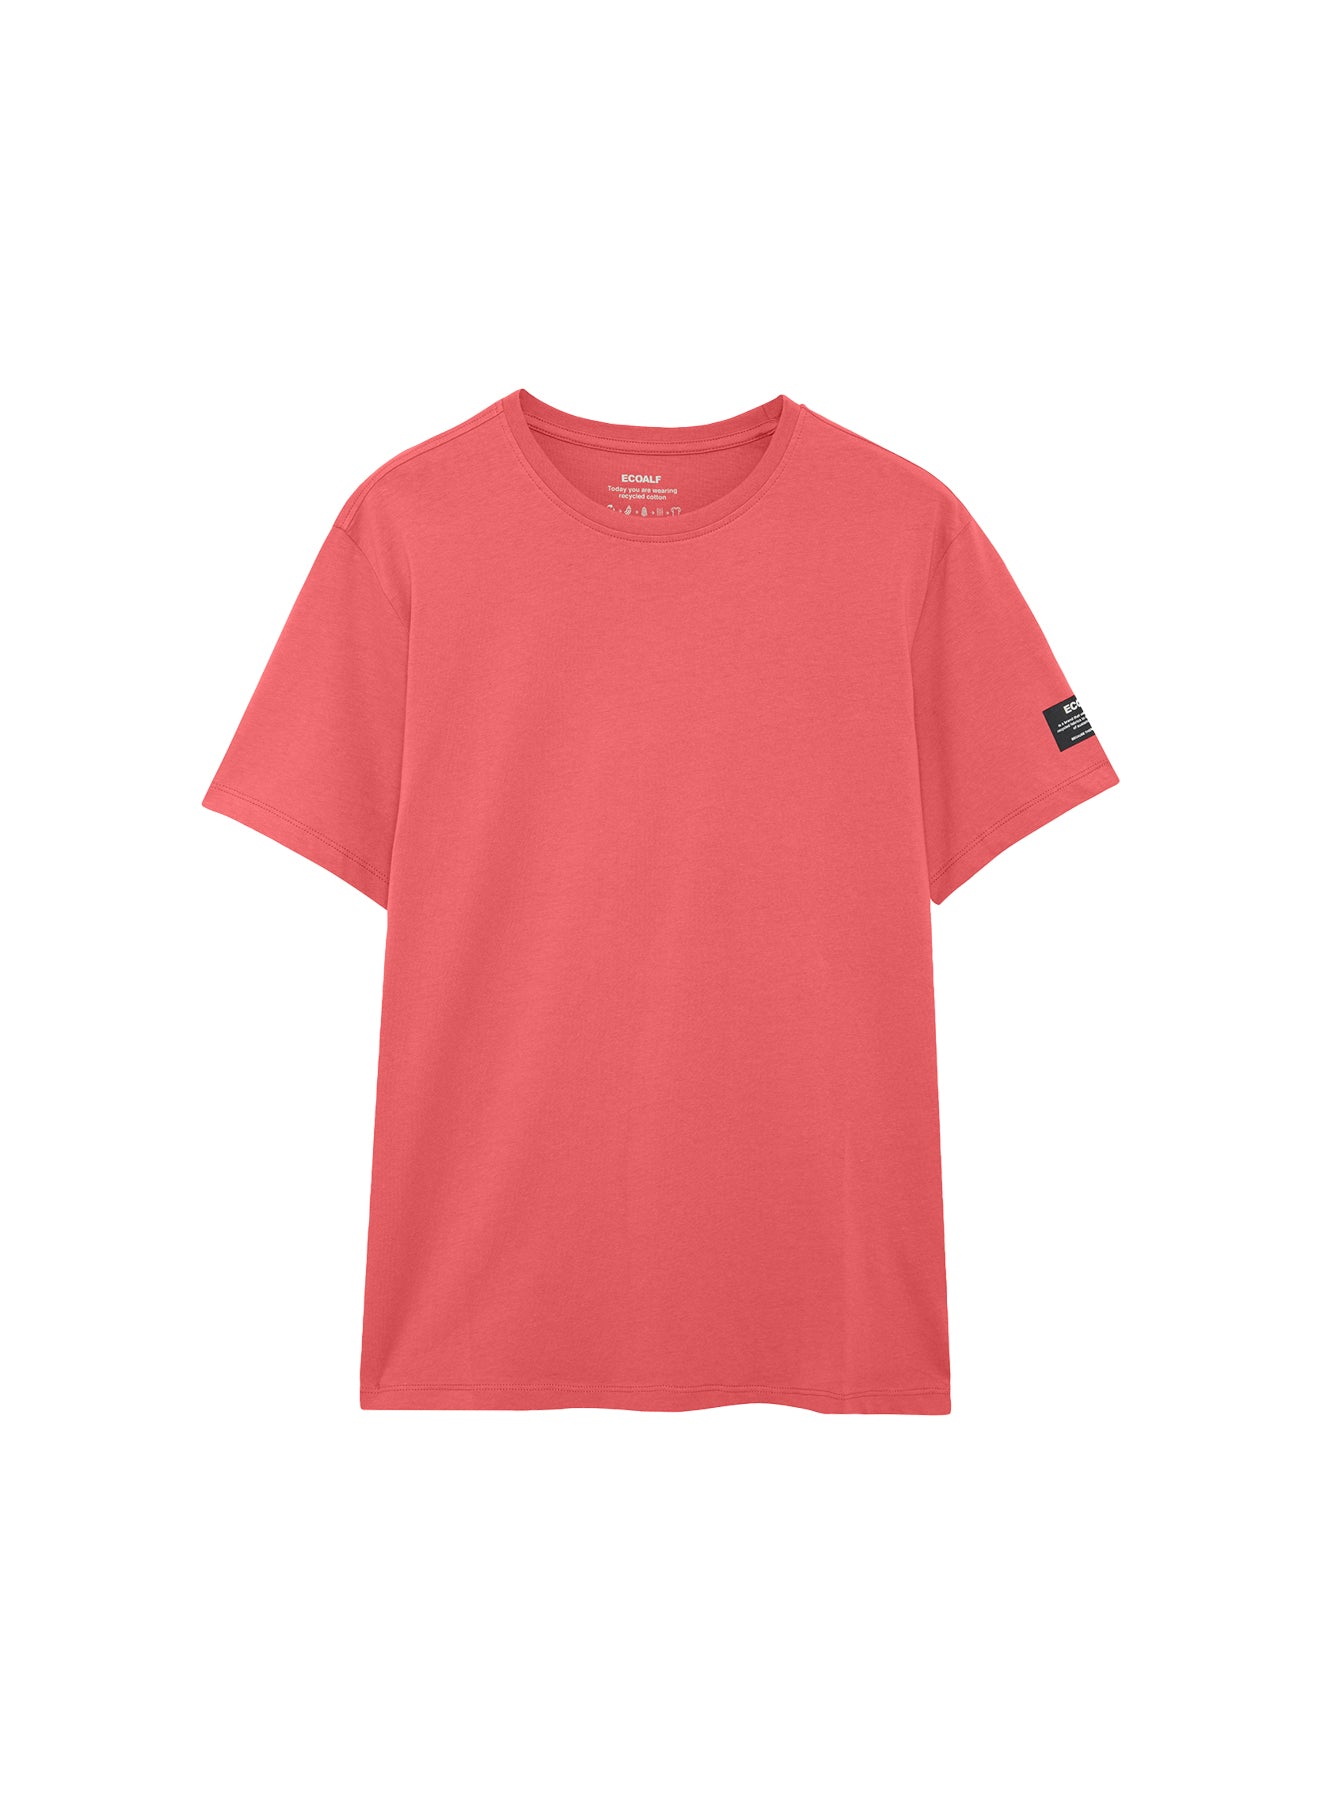 T-Shirt con Logo sulla Manica Sinistra / Corallo - Ideal Moda